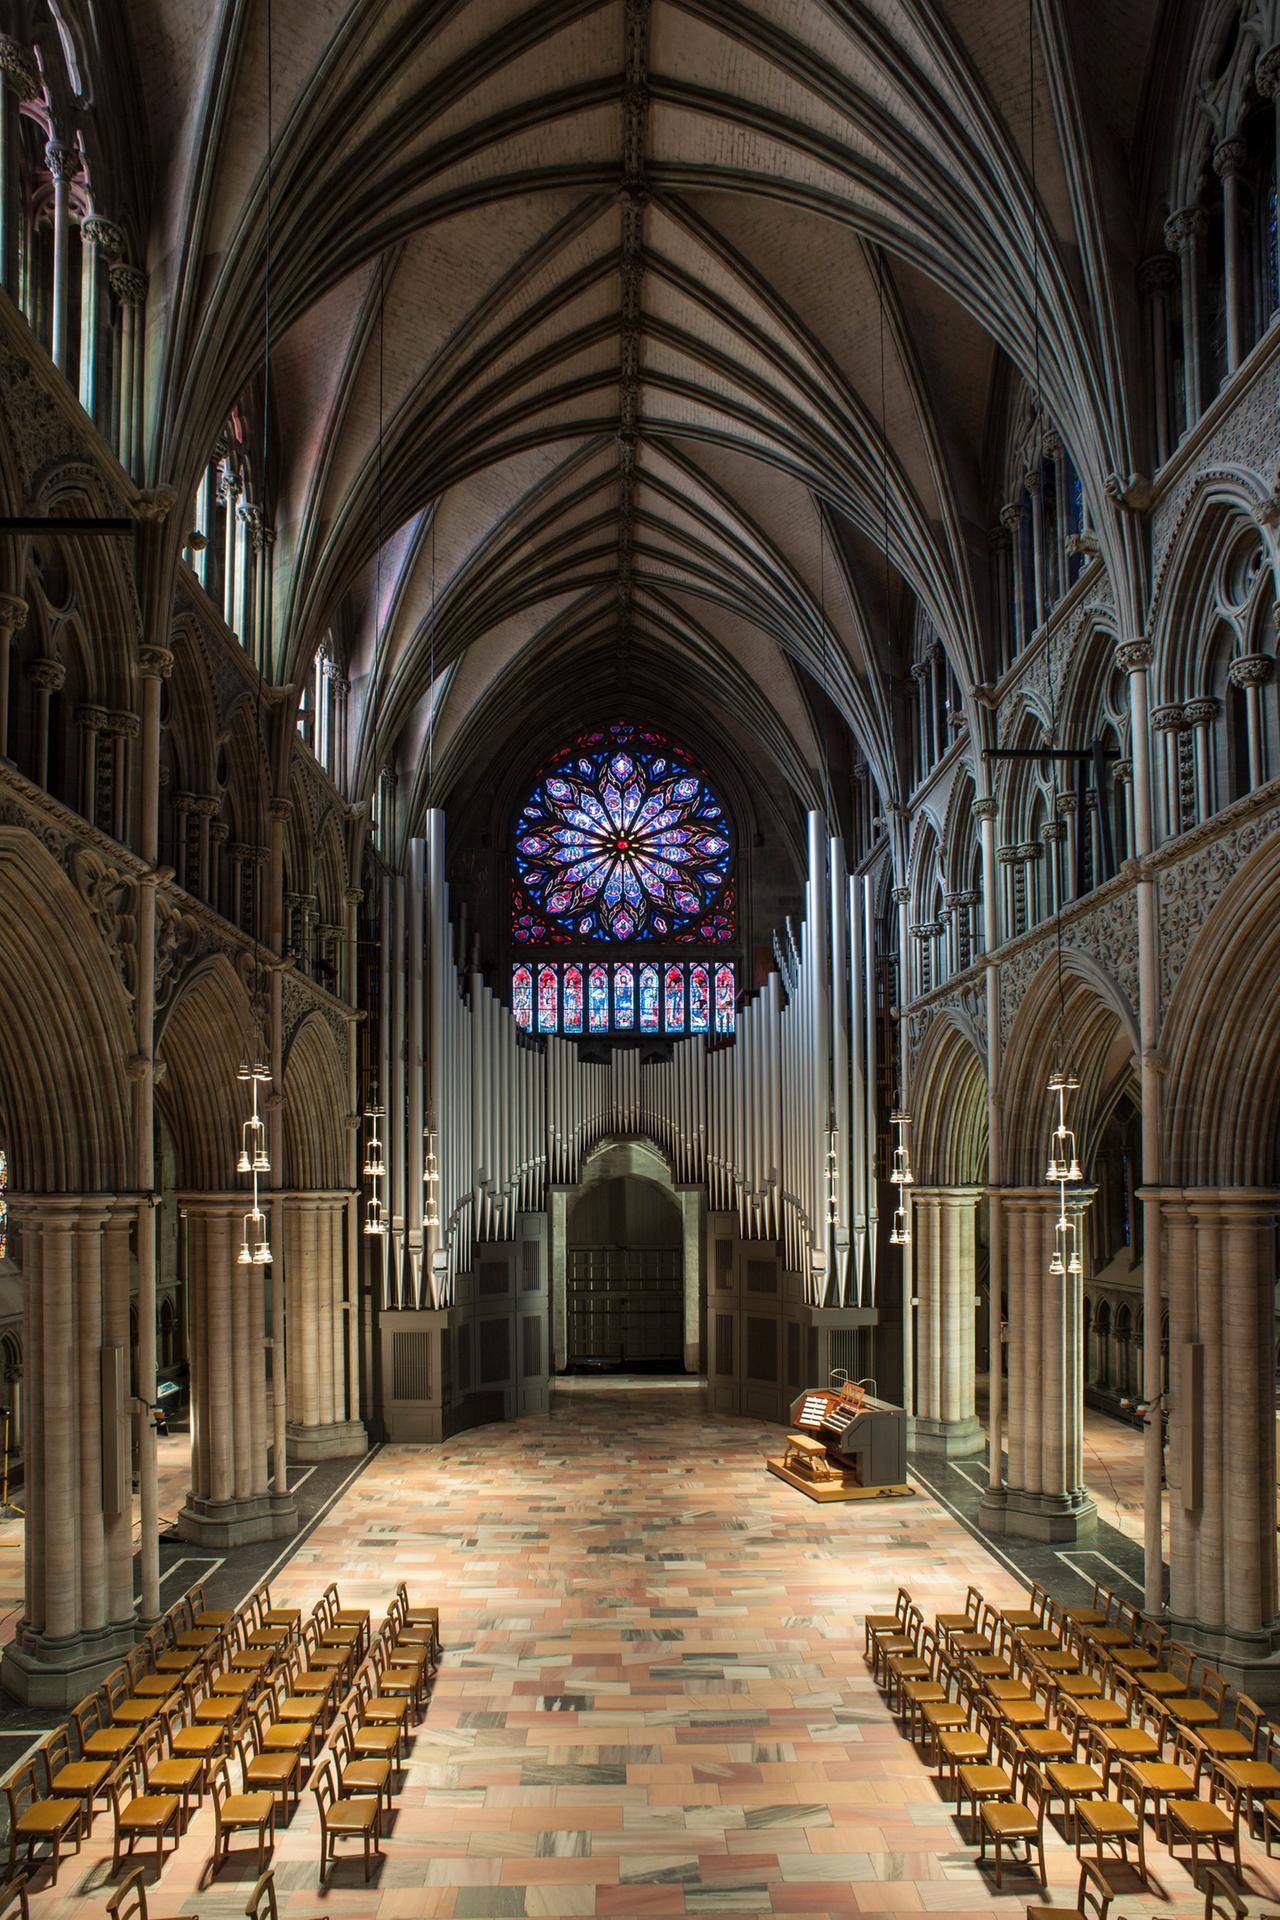 Im Innern eines gotischen Kirchenschiffs sind Stuhlreihen sowie am hinteren Ende ein Orgelspieltisch unterhalb einer großen Orgel zu sehen. Darüber fällt der Blick auf ein riesiges, buntes Rosettenfenster.